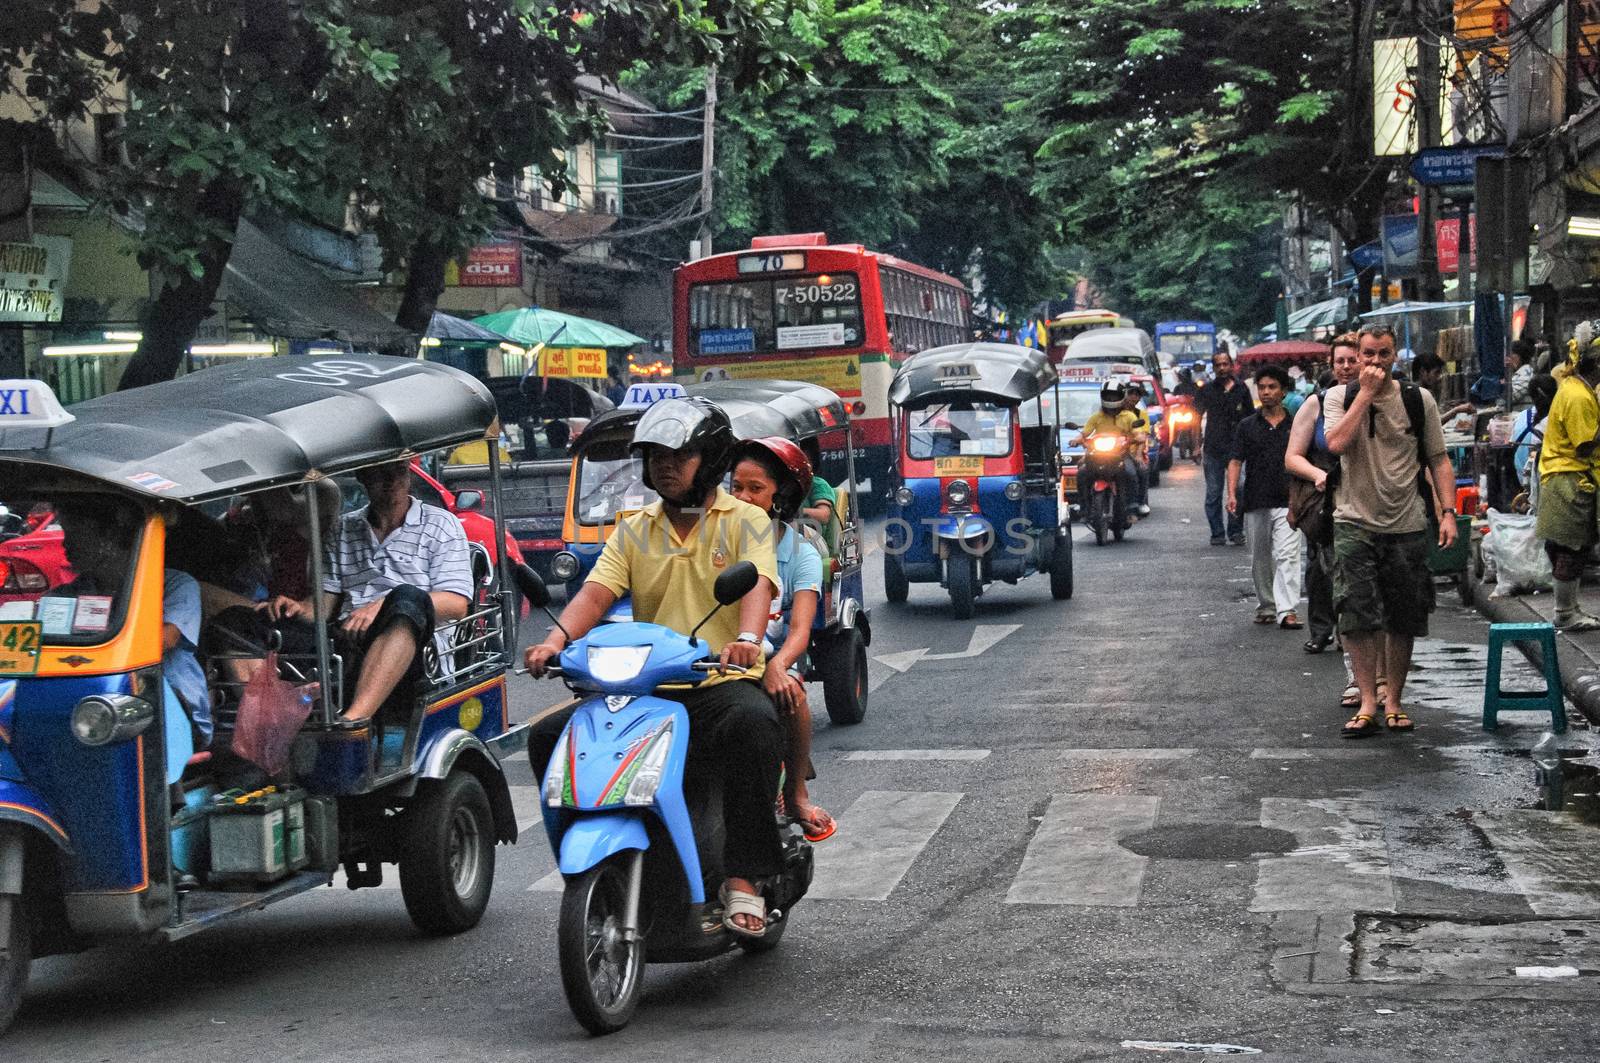 BANGKOK - AUG 23: A three wheeled tuk tuk taxi transports passen by jovannig